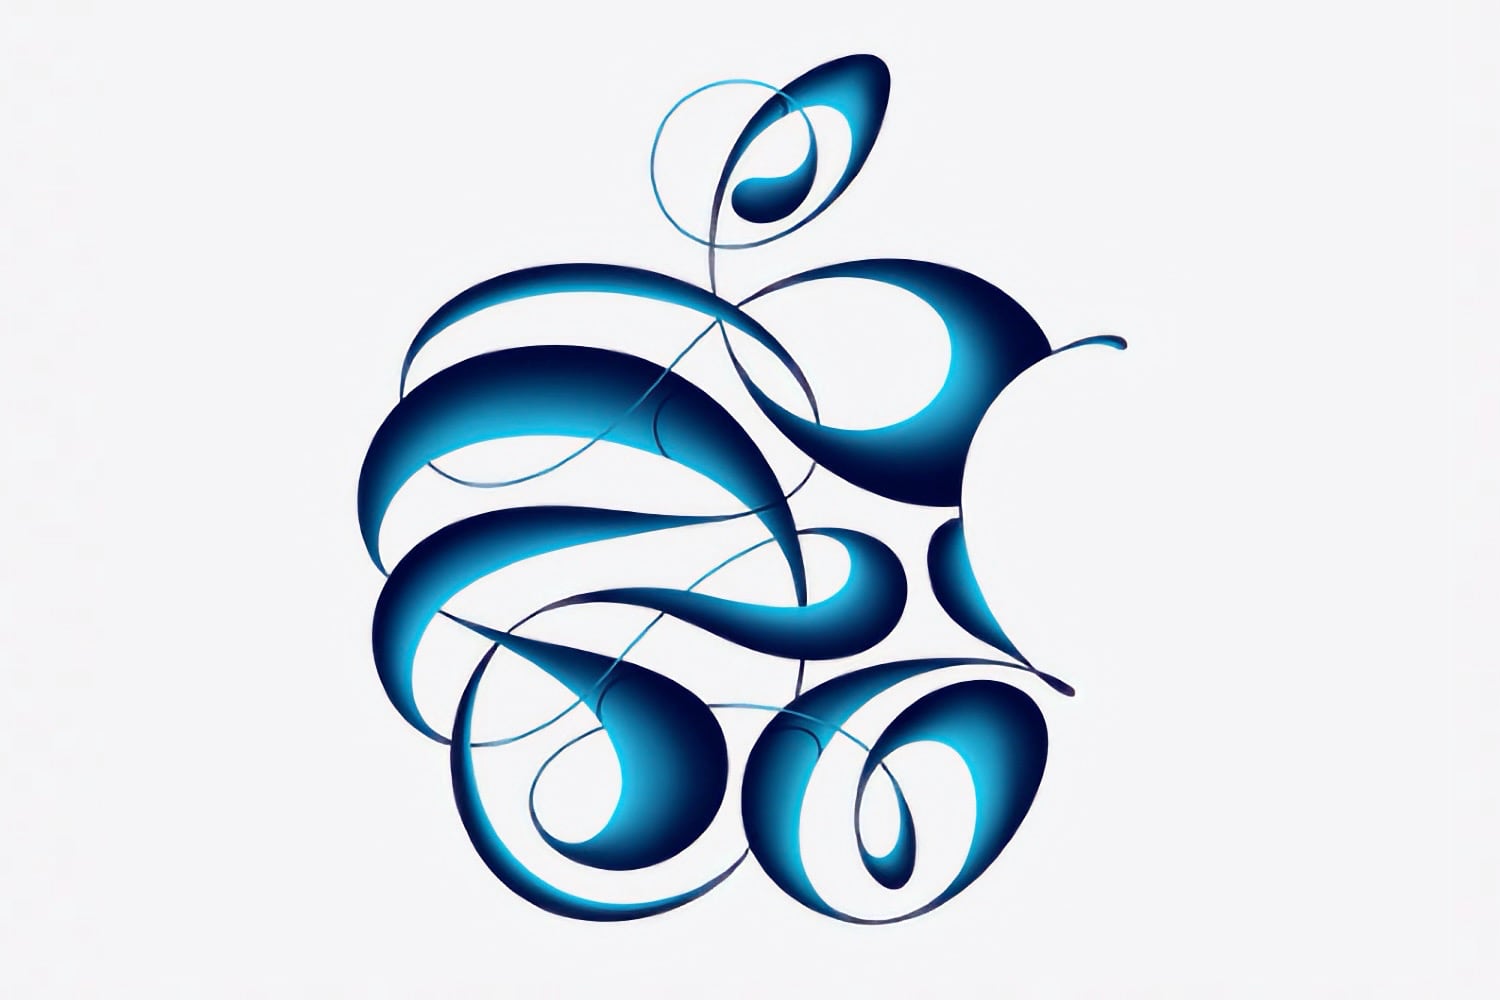 Apple Event et logo Pencil